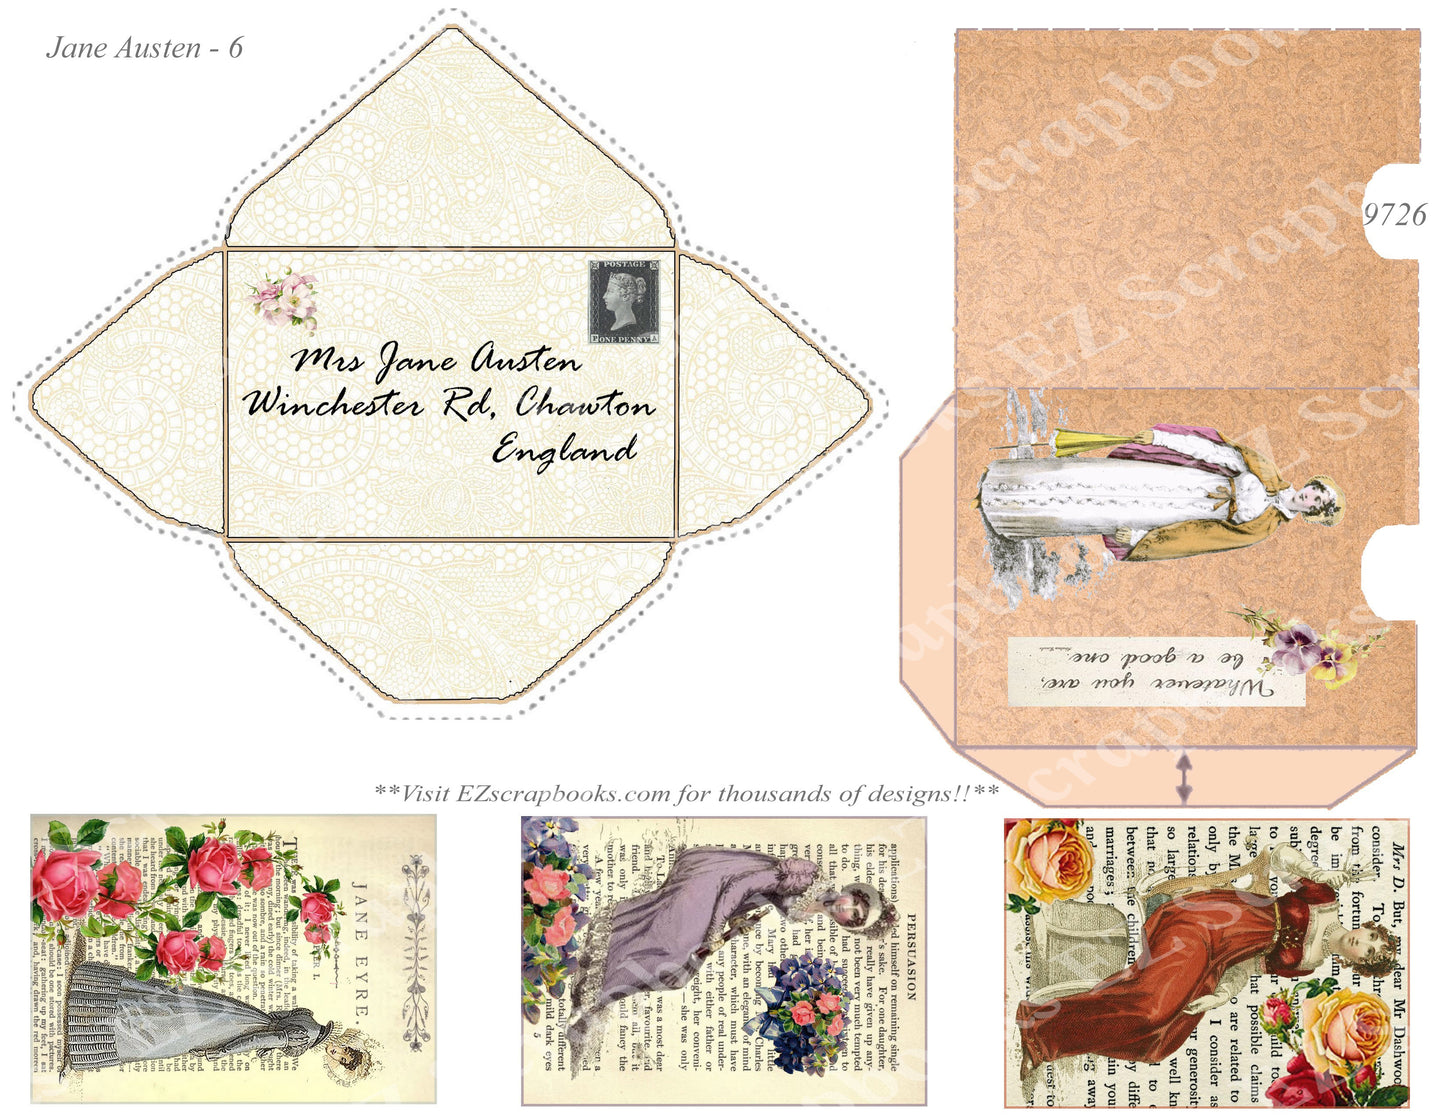 Jane Austen - Embellishments - 6 - 9726